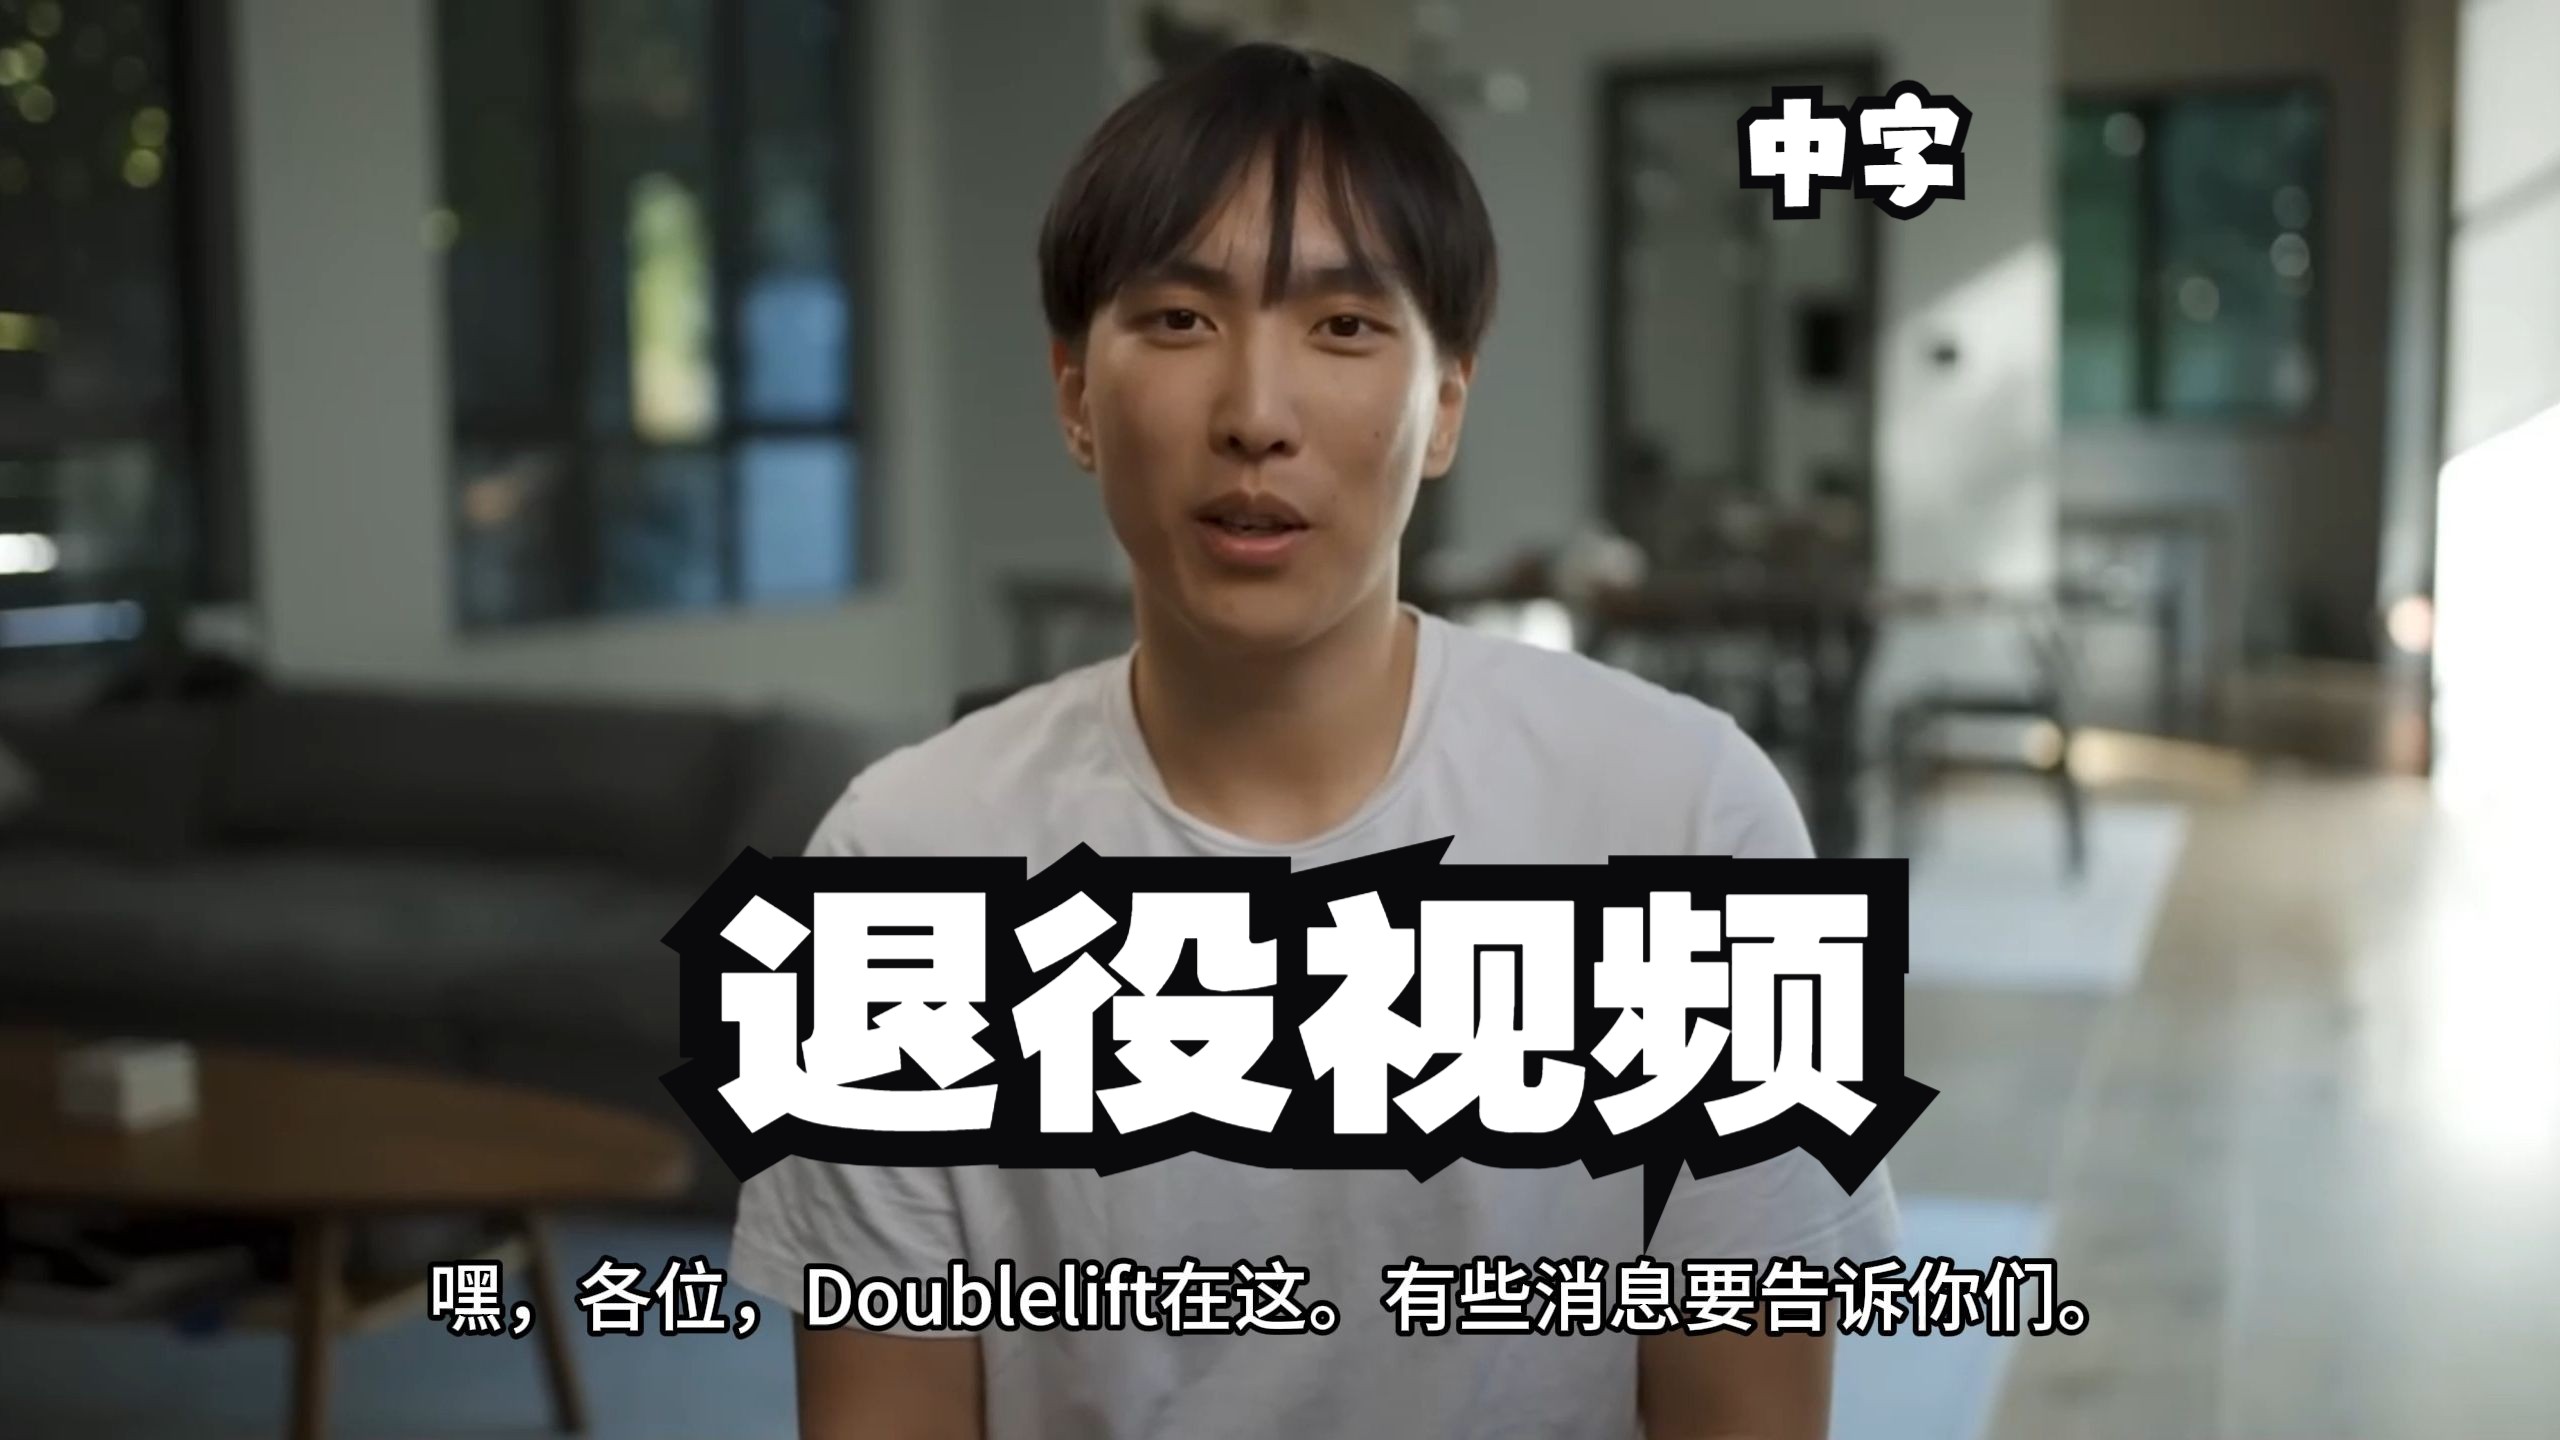 【中字】大师兄Doublelift 退役视频